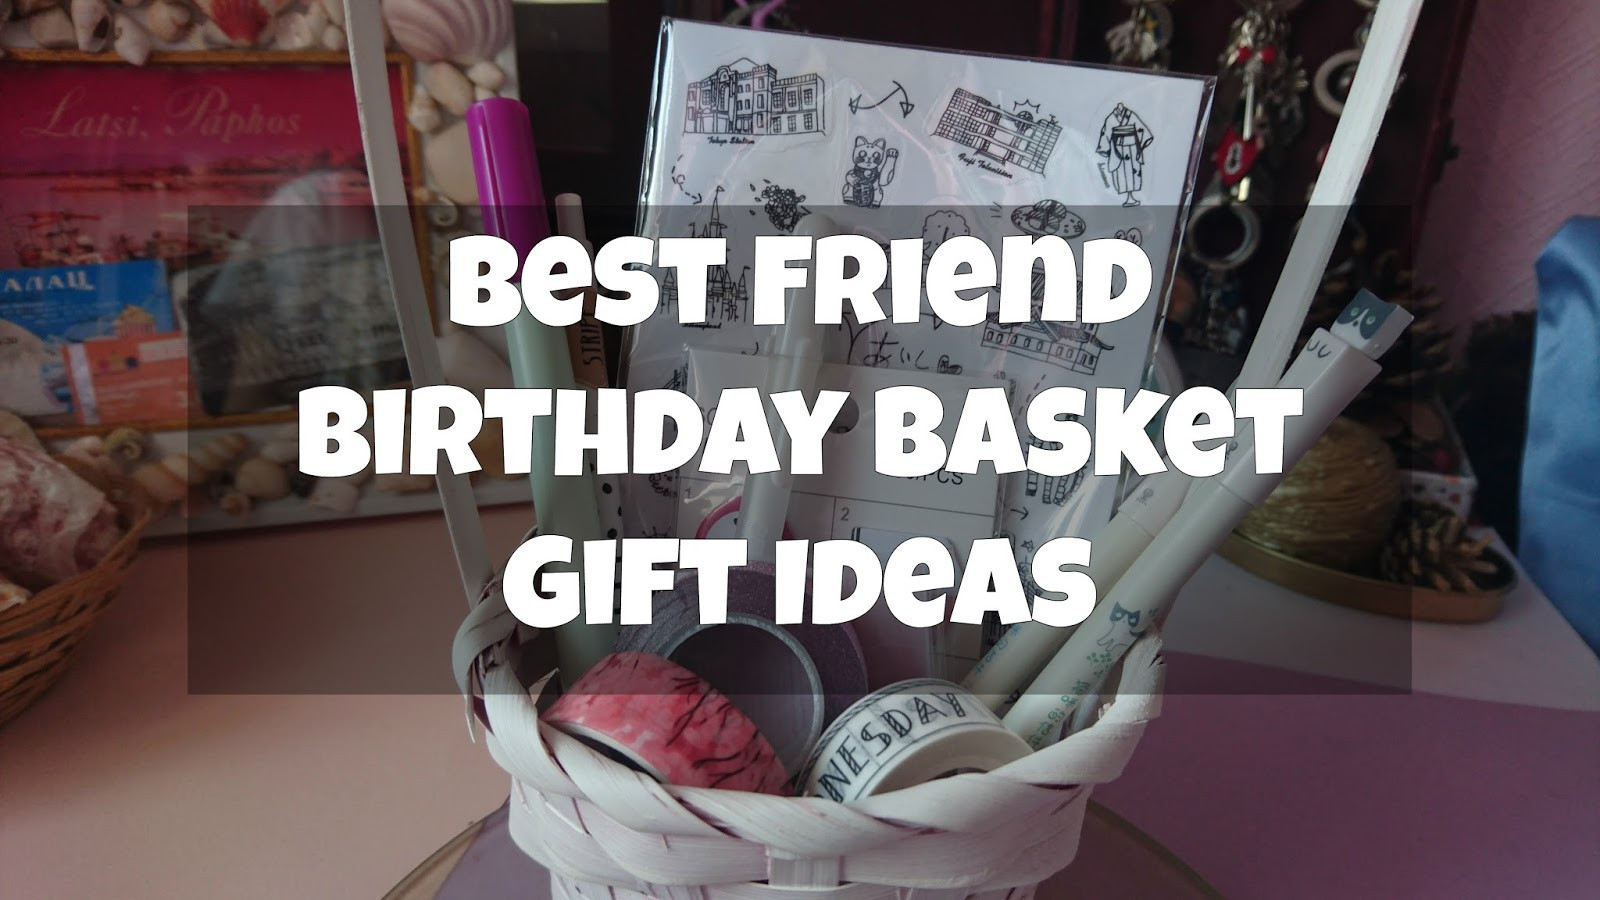 Best Friend Birthday Gift Basket Ideas
 Best Friend Birthday Basket Gift Ideas Limbria